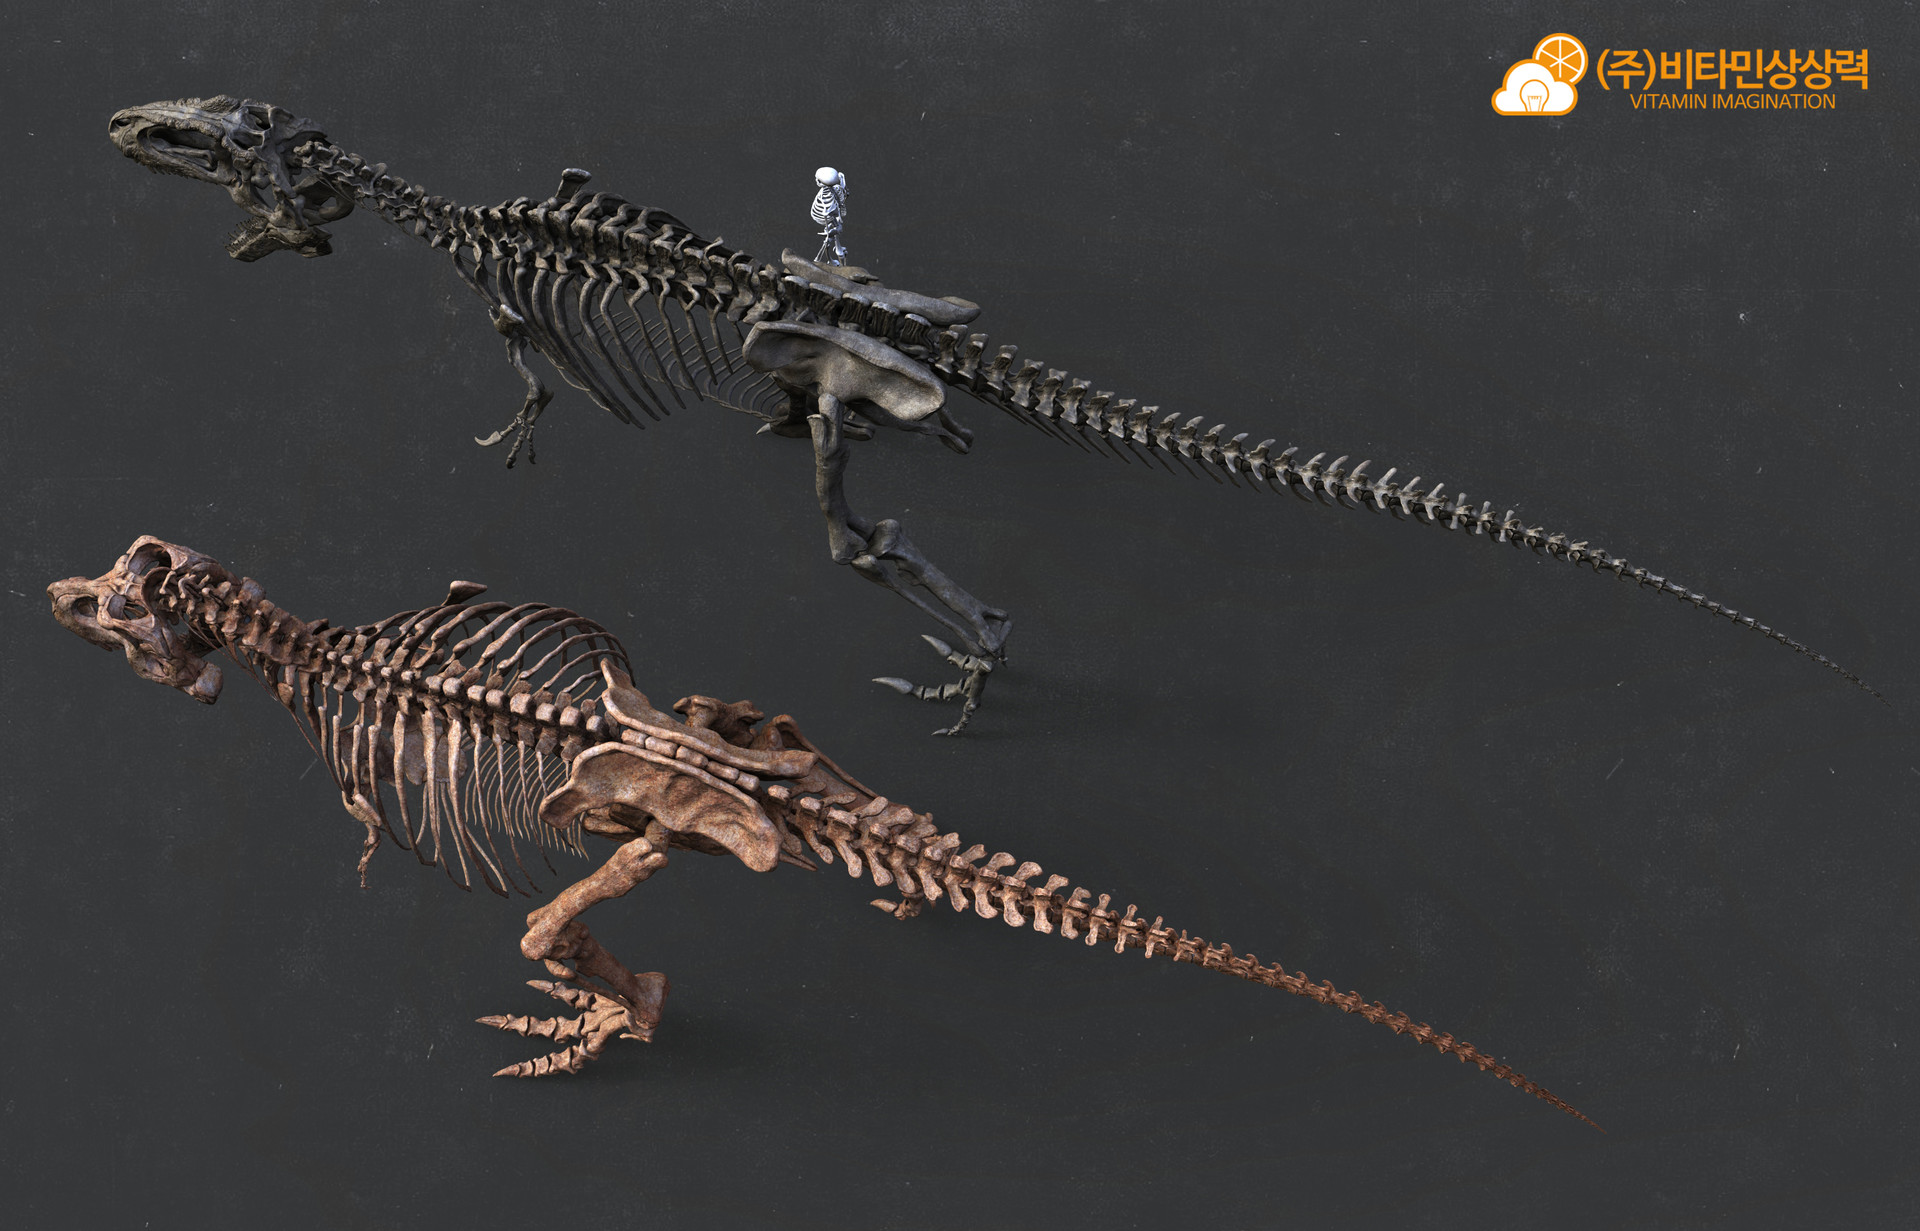 Tyrannosaurus Rex vs Giganotosaurus carolinii Vitamin-imagination-vs-4